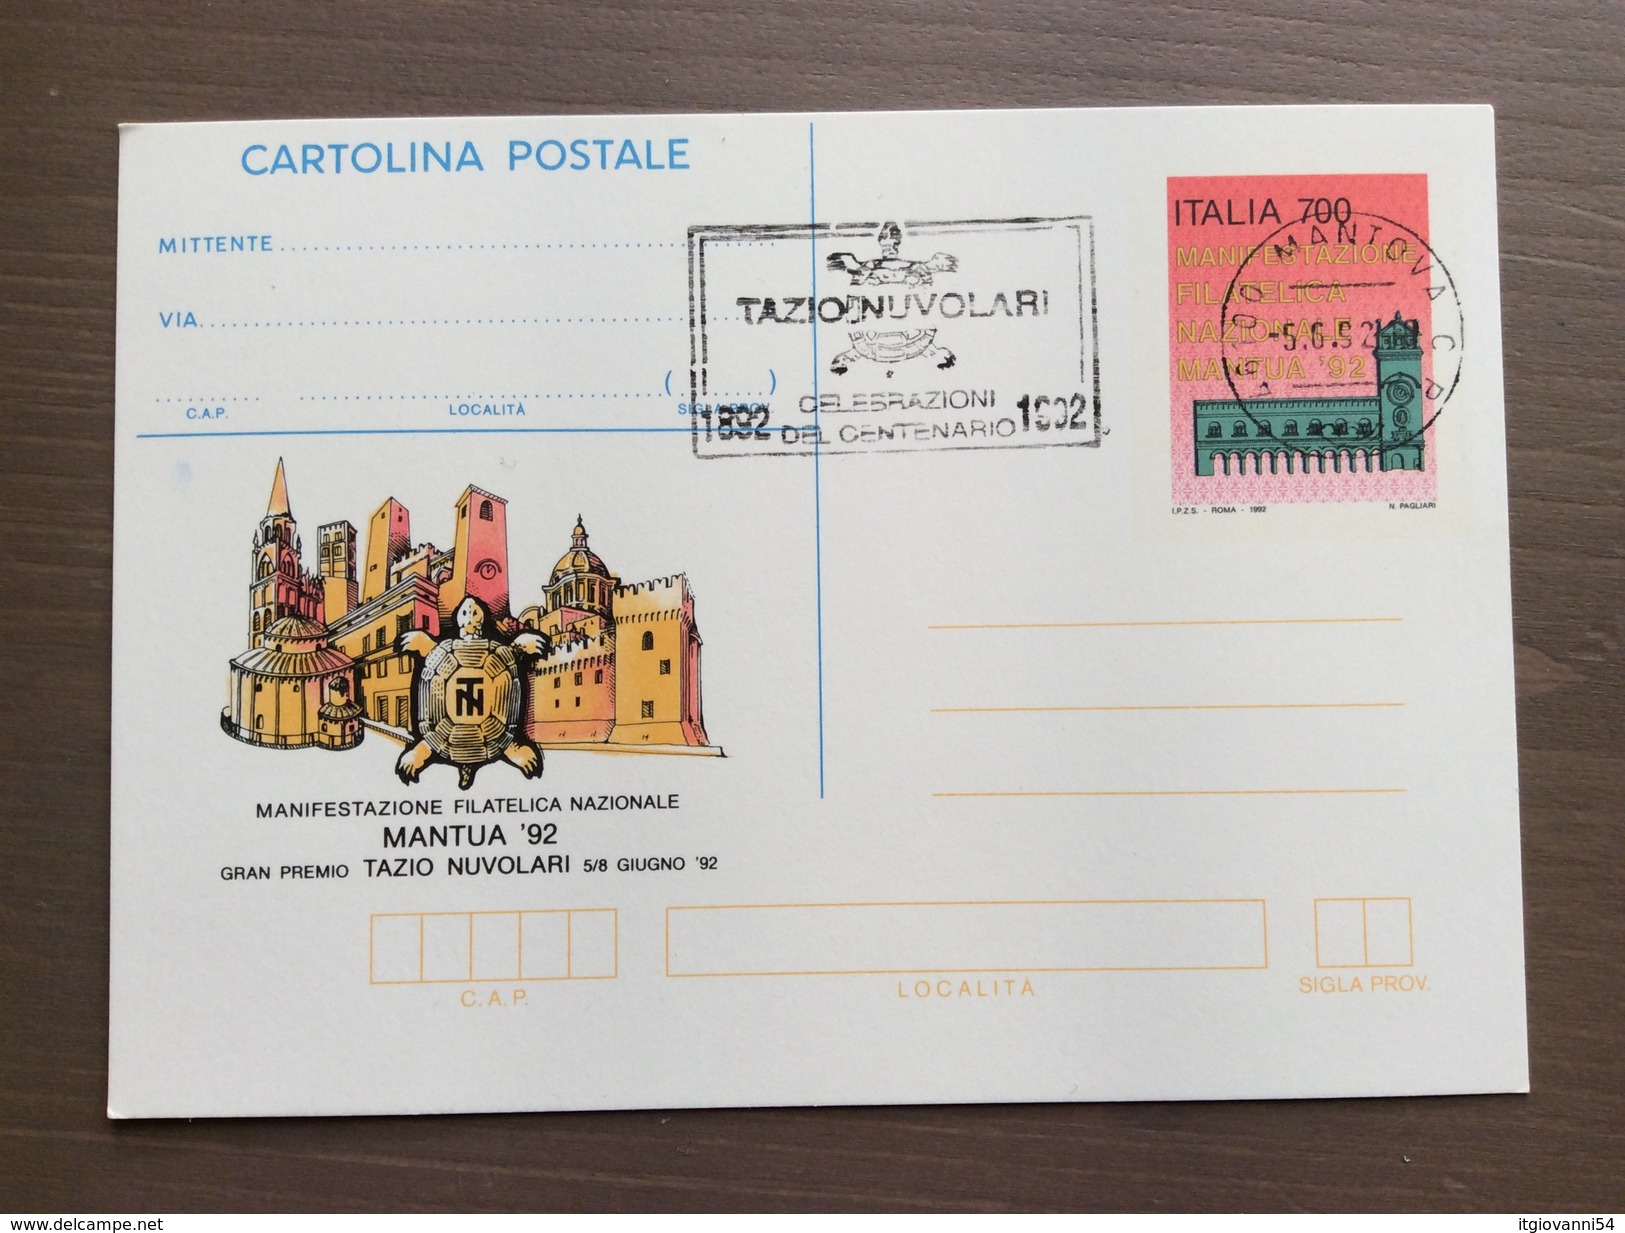 Cartolina Postale Mantua '92 Con Targhetta Celebrazioni Del Centenario Tazio Nuvolari Mantova 5-6-1992 - Grand Prix / F1